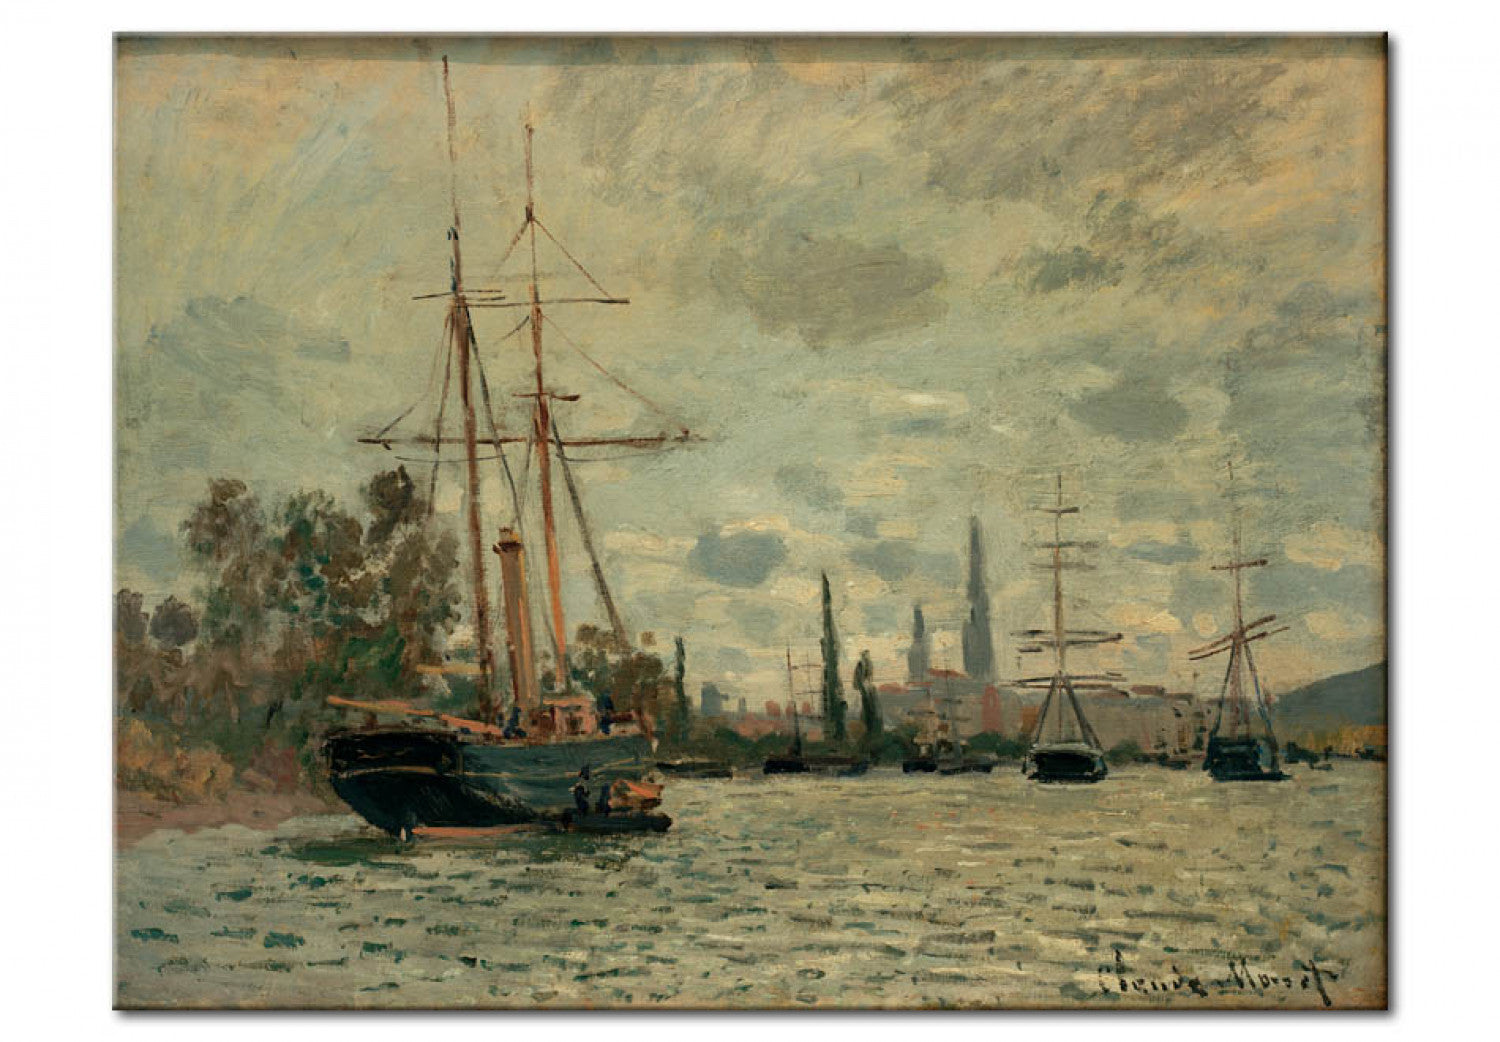 The Seine is Rouen - Claude Monet